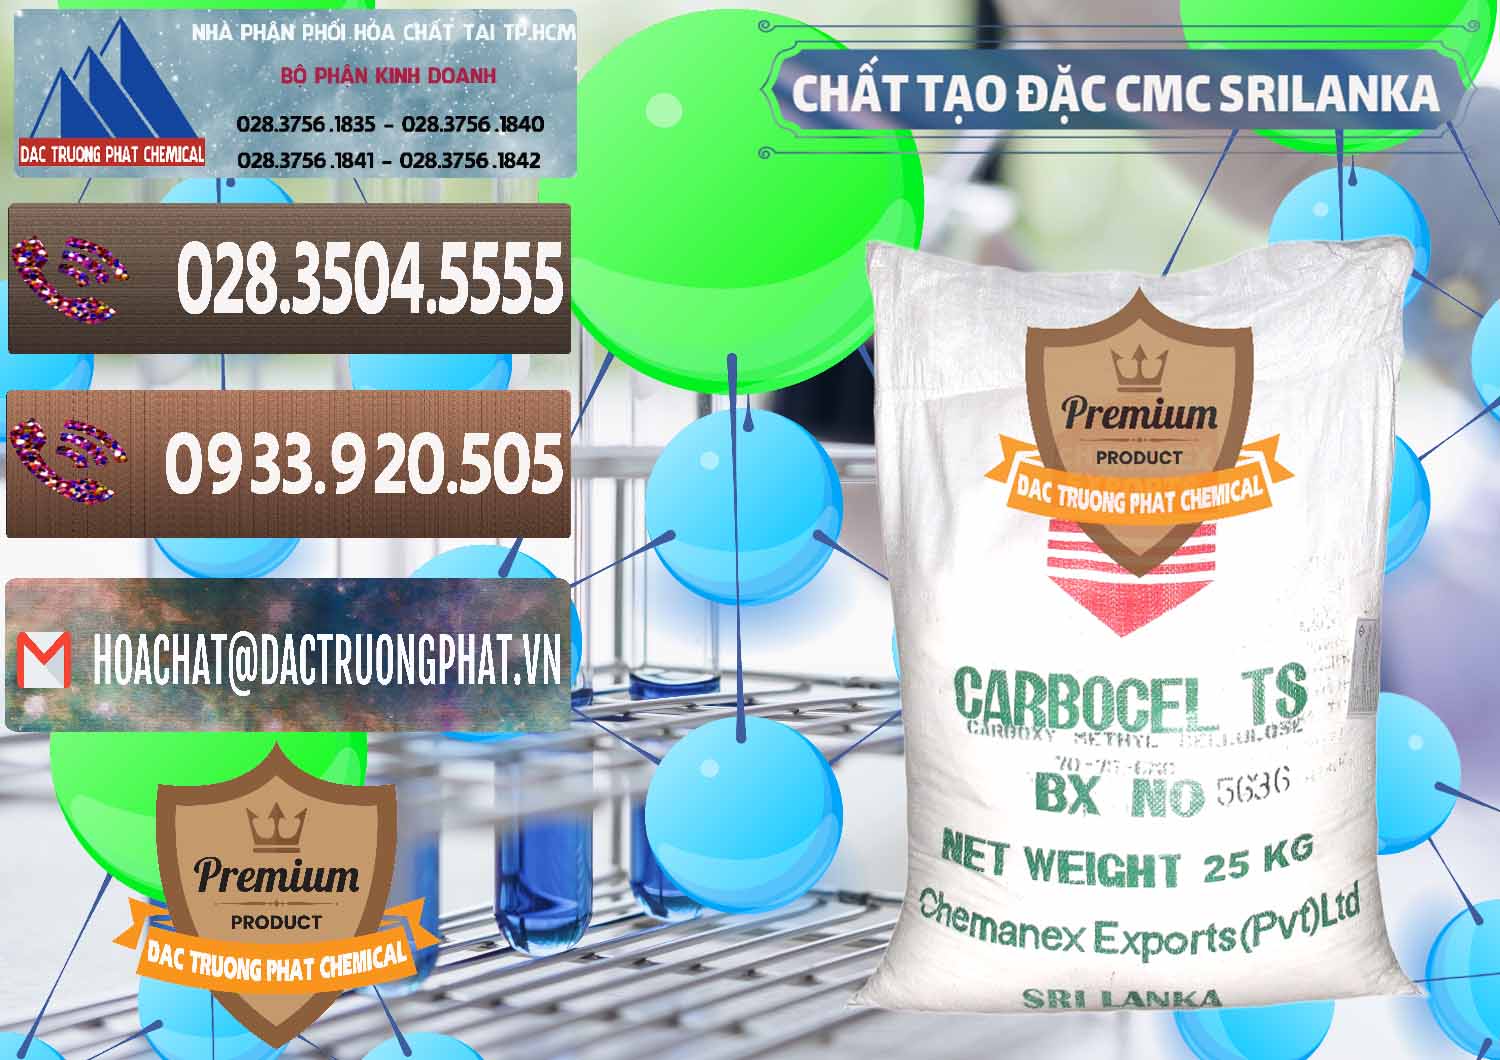 Nơi bán - cung cấp Chất Tạo Đặc CMC - Carboxyl Methyl Cellulose Srilanka - 0045 - Phân phối - cung cấp hóa chất tại TP.HCM - hoachatviet.net